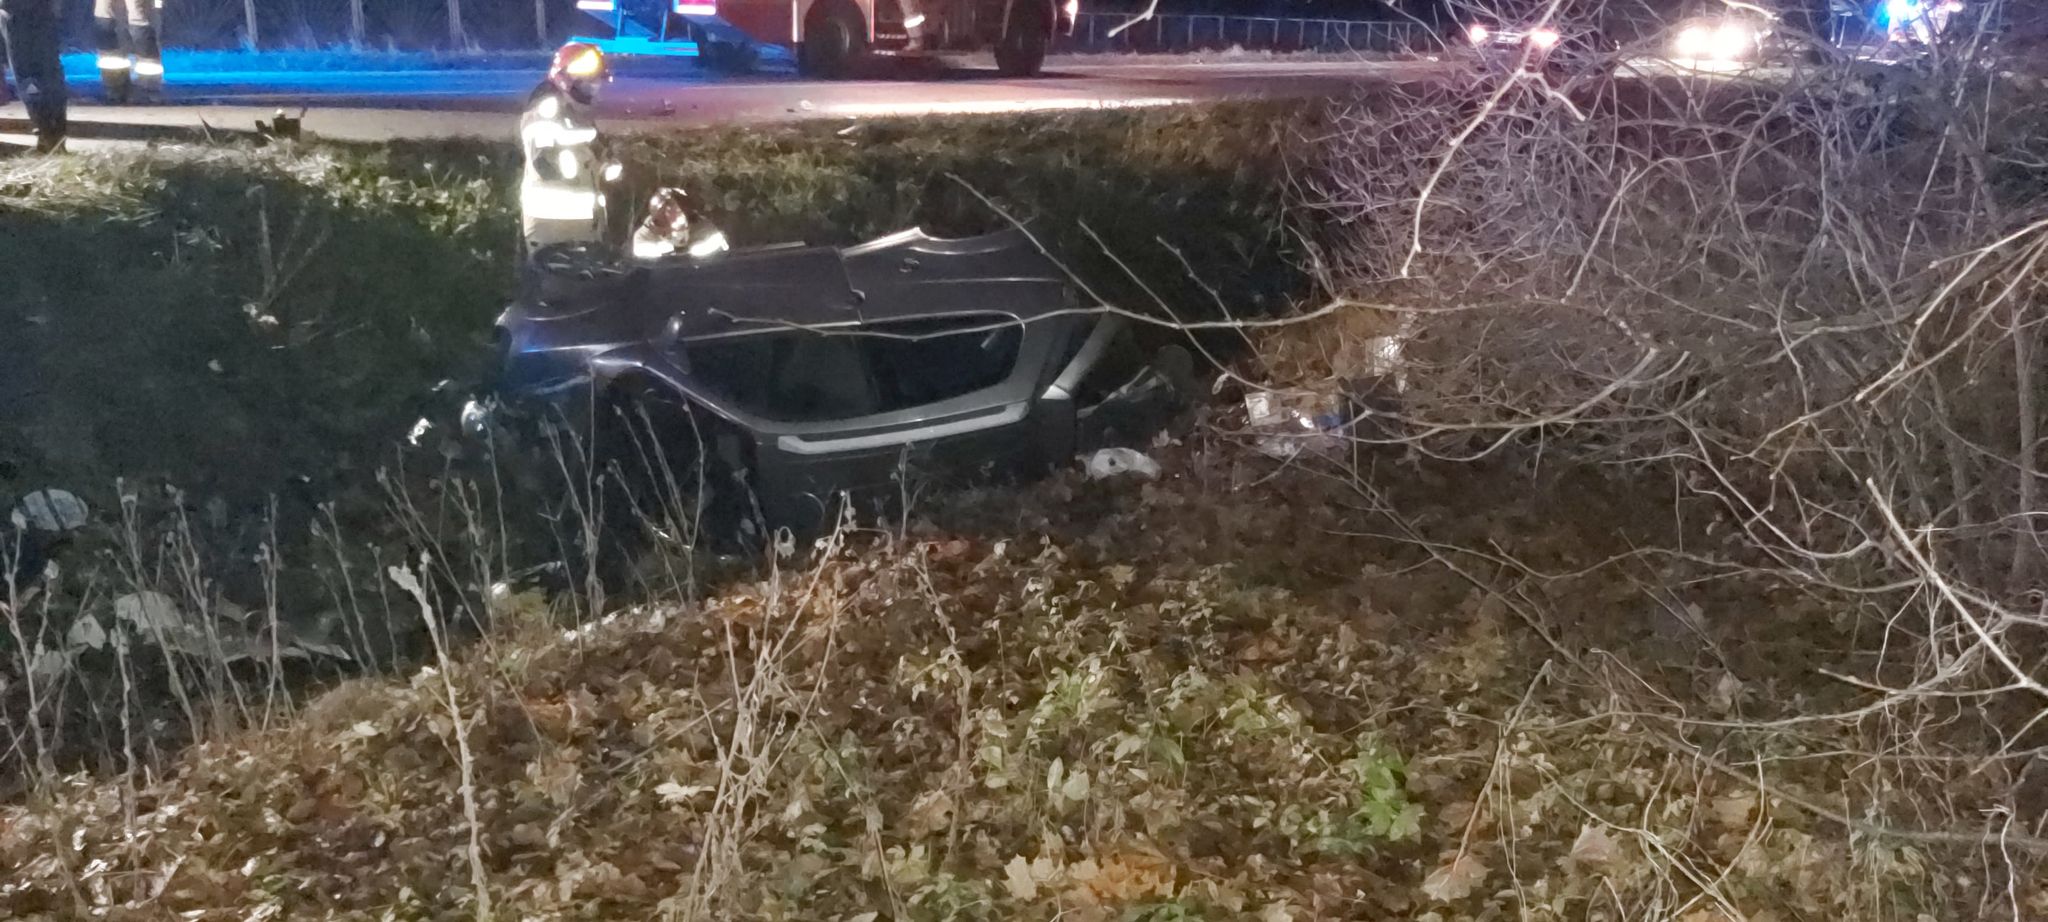 24-latek w BMW uderzył w pojazd 65-latka, który przewrócił się do rowu